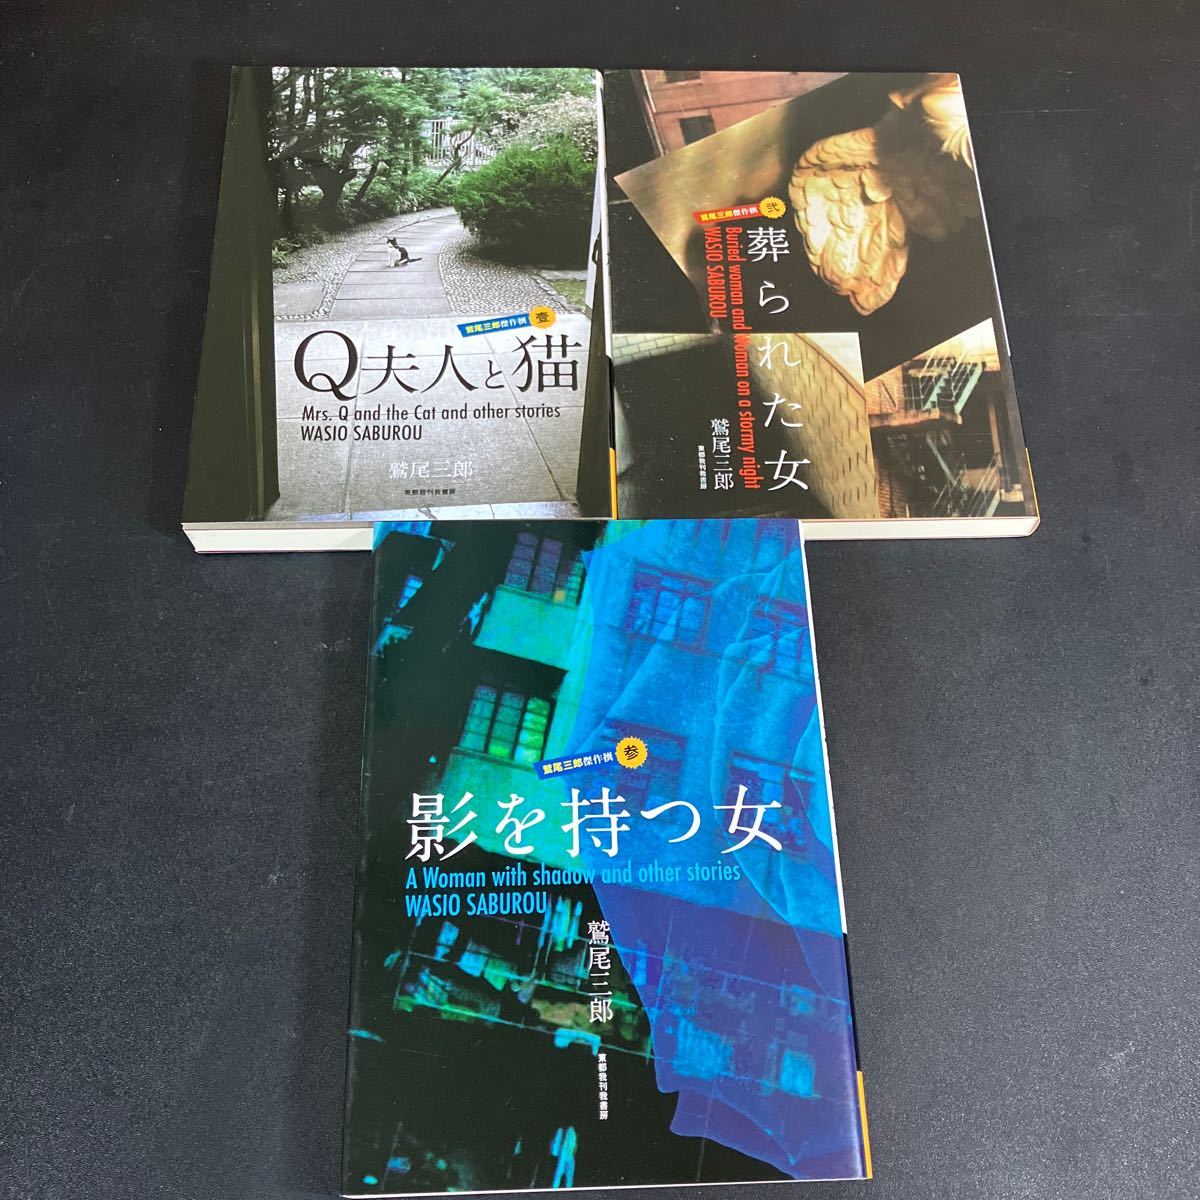 24-2-28 "Выбор шедевров Сабуро Васио 3 тома (1: миссис Q и кошка/2: похороненная женщина/3: женщина с тенью)